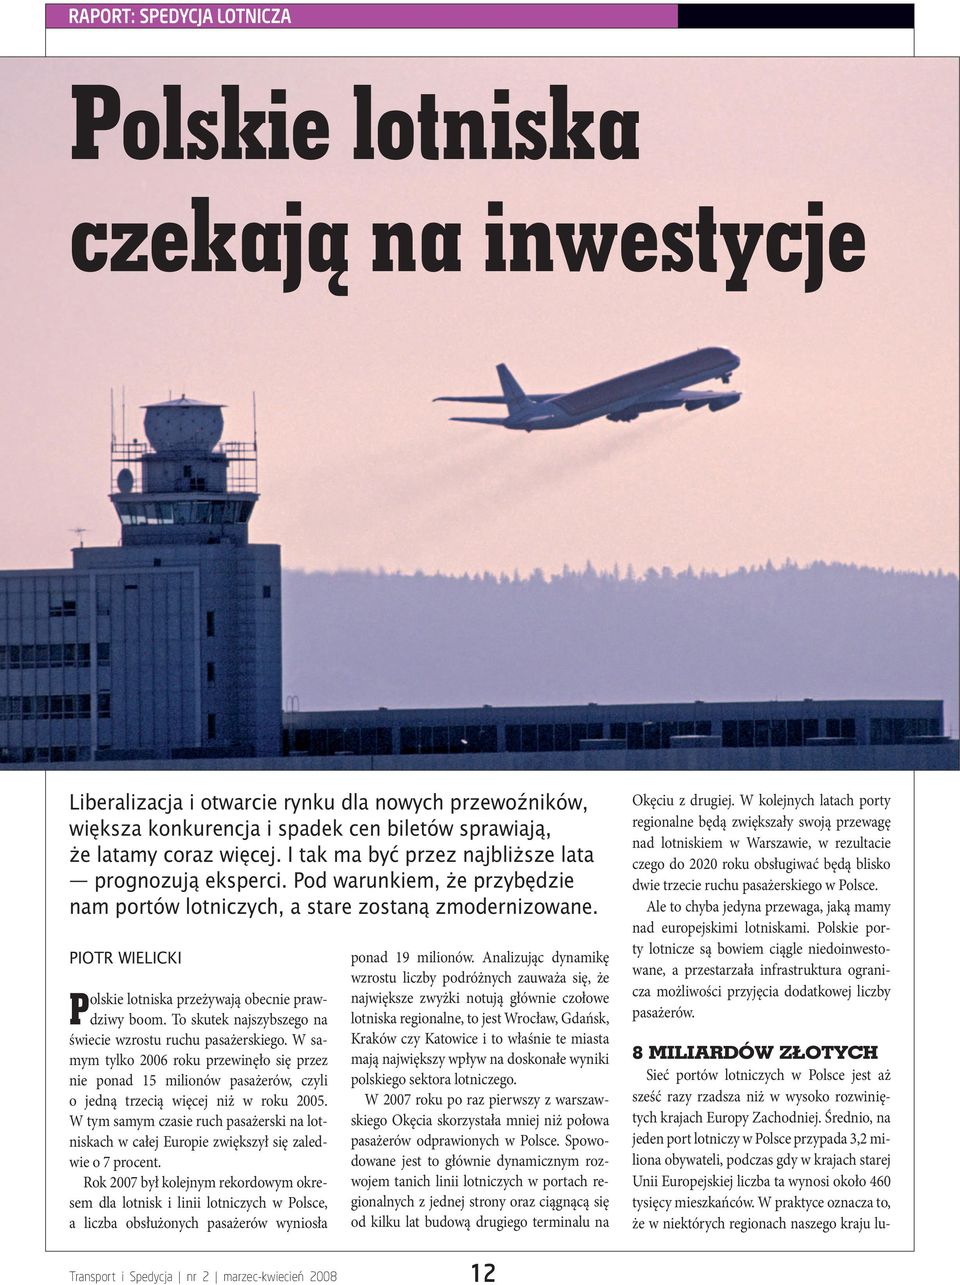 PIOTR WIELICKI Polskie lotniska przeżywają obecnie prawdziwy boom. To skutek najszybszego na świecie wzrostu ruchu pasażerskiego.